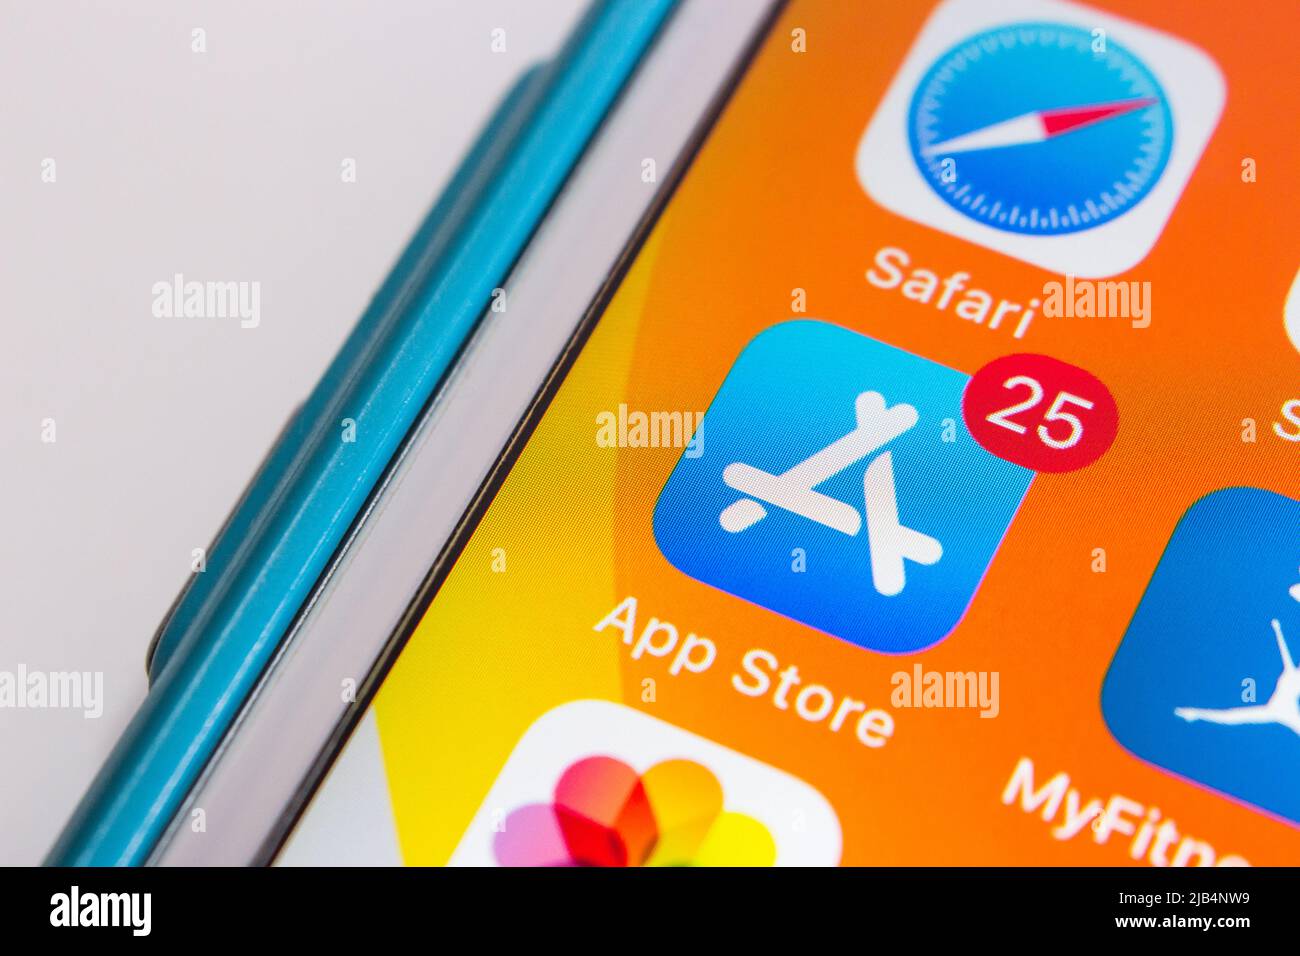 App Store Icon, una piattaforma di distribuzione digitale sviluppata e gestita da Apple Inc., per applicazioni mobili su iOS e iPadOS, con badge 25 su iPhone Foto Stock